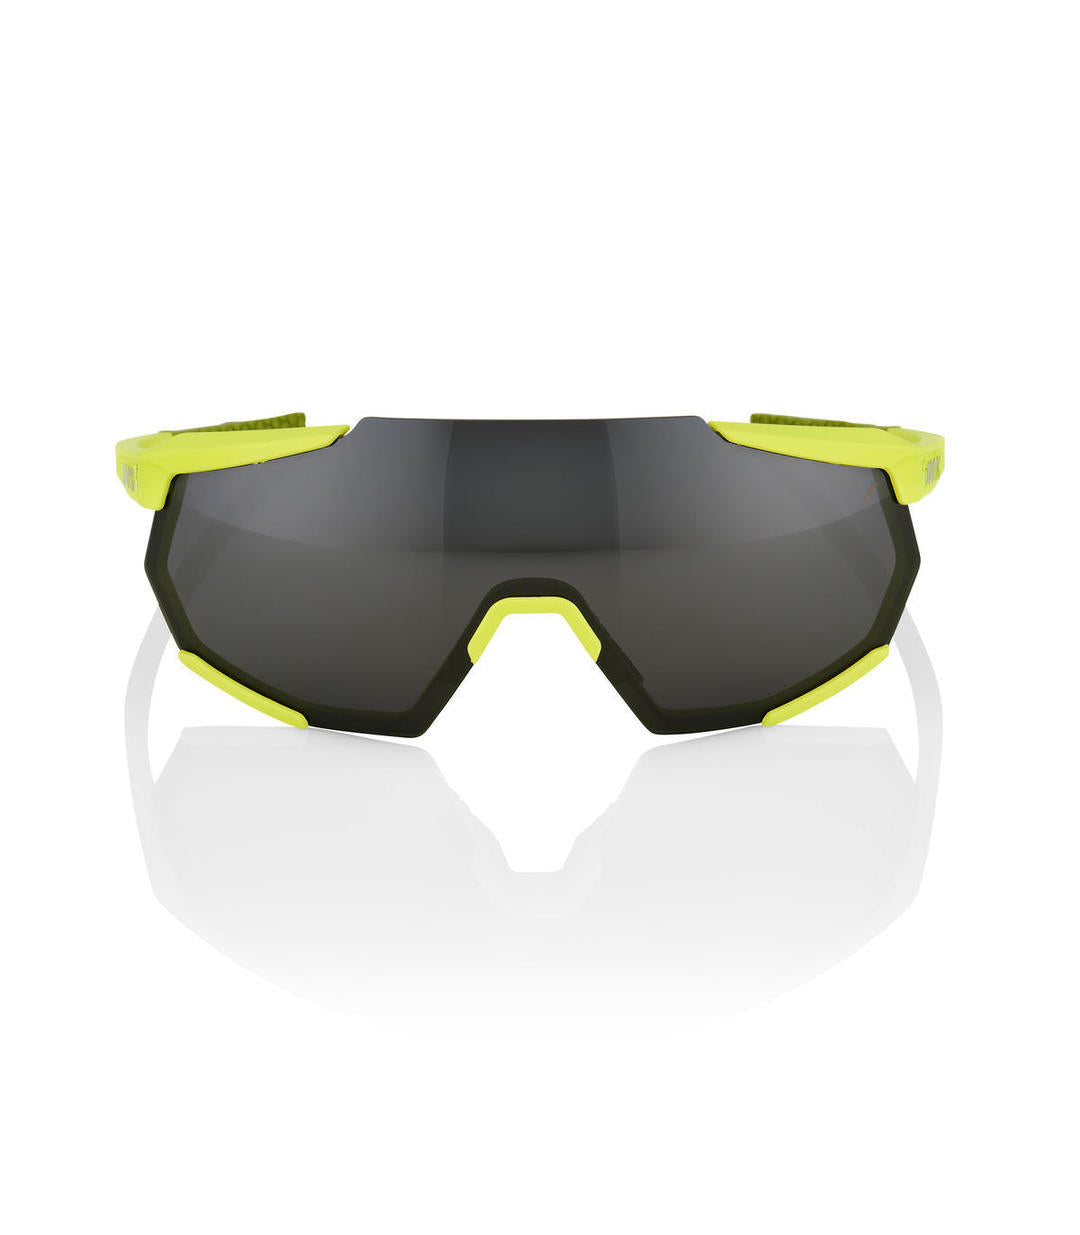 RIDE 100% Gafas de Sol Racetrap Soft Tact - Banana Black Mirror Lens